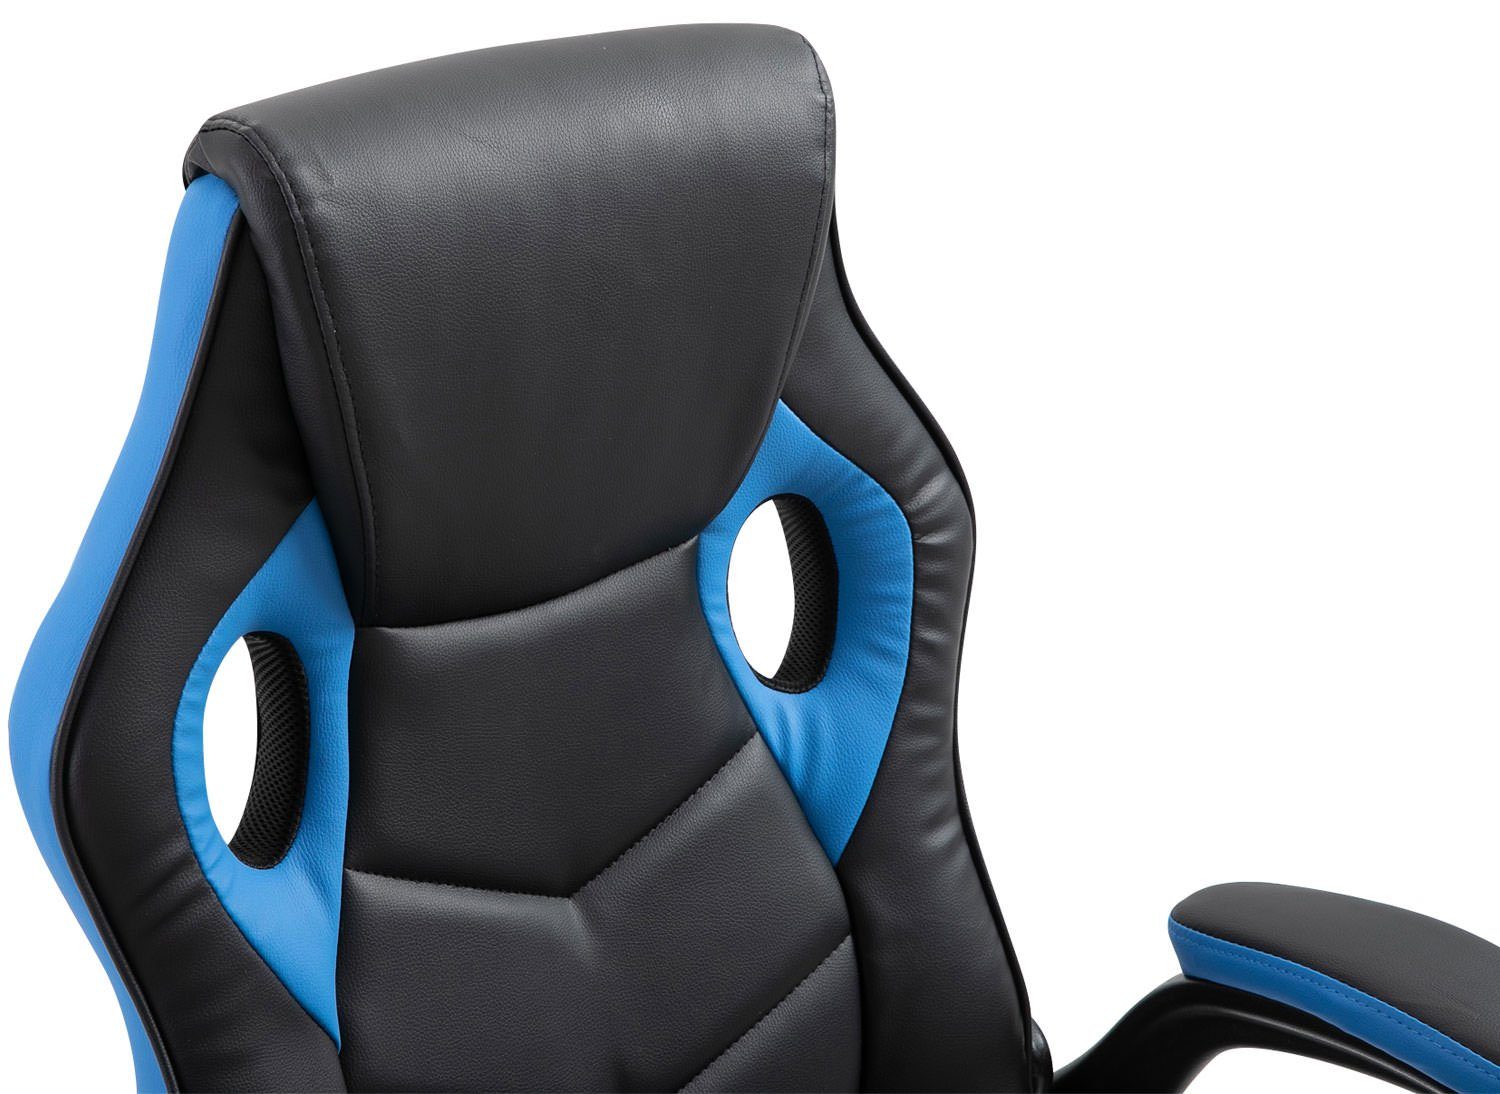 CLP Gaming Chair Omis Kunstleder, schwarz/blau höhenverstellbar und drehbar